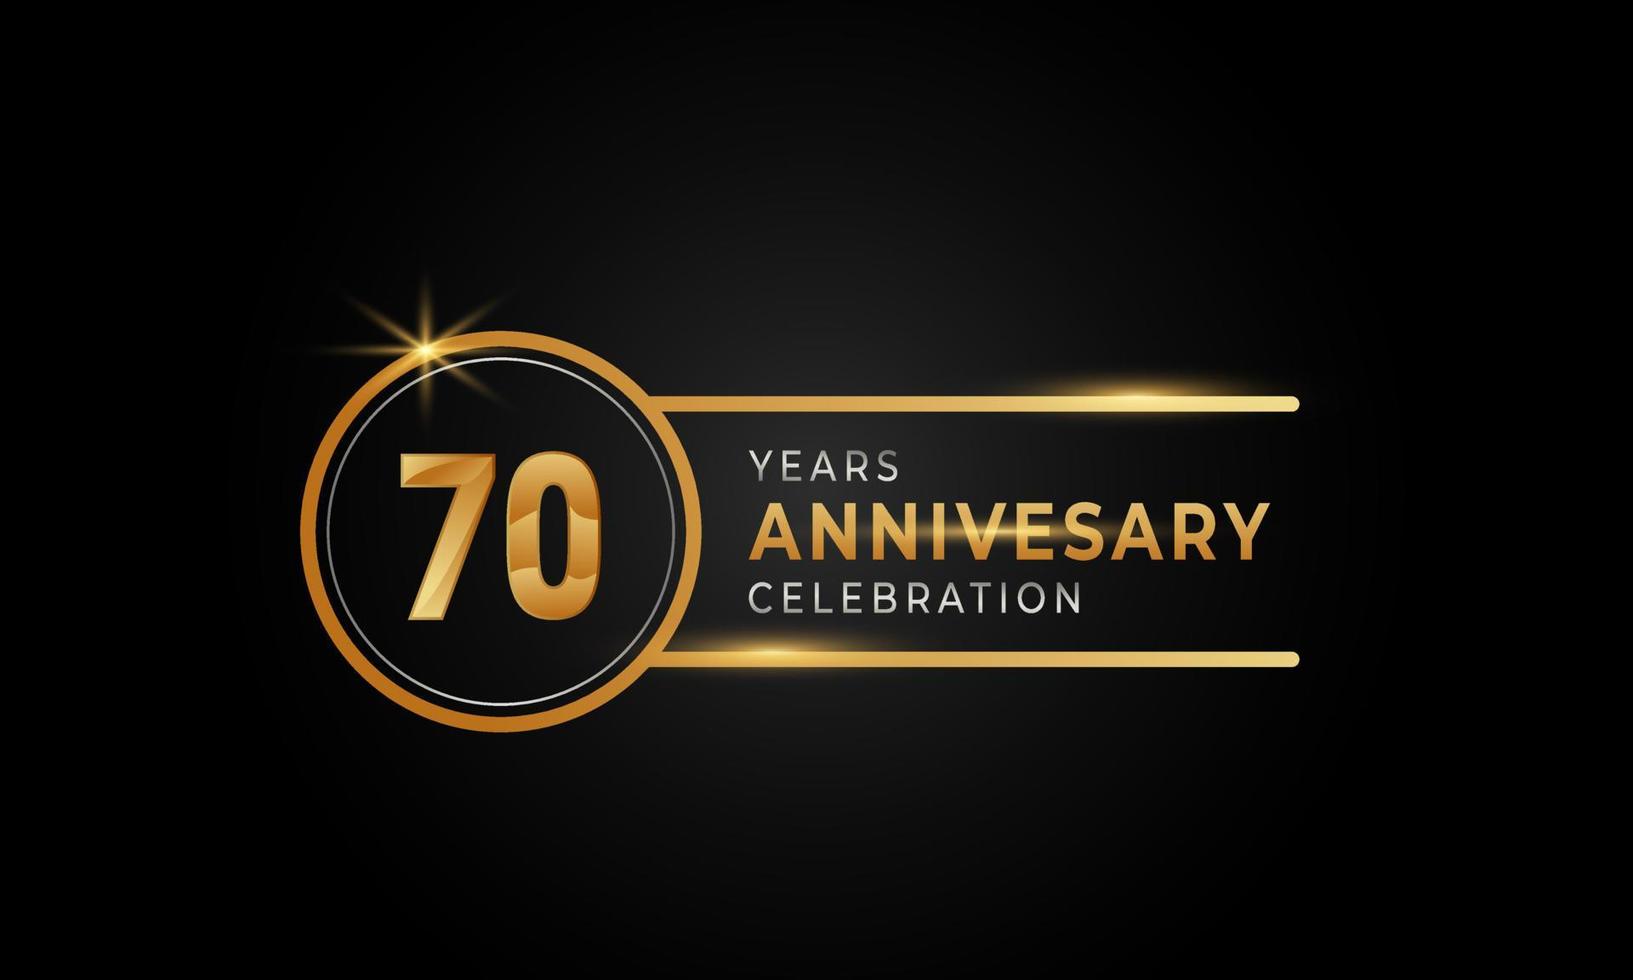 Celebrazione dell'anniversario di 70 anni colore dorato e argento con anello circolare per eventi celebrativi, matrimoni, biglietti di auguri e inviti isolati su sfondo nero vettore